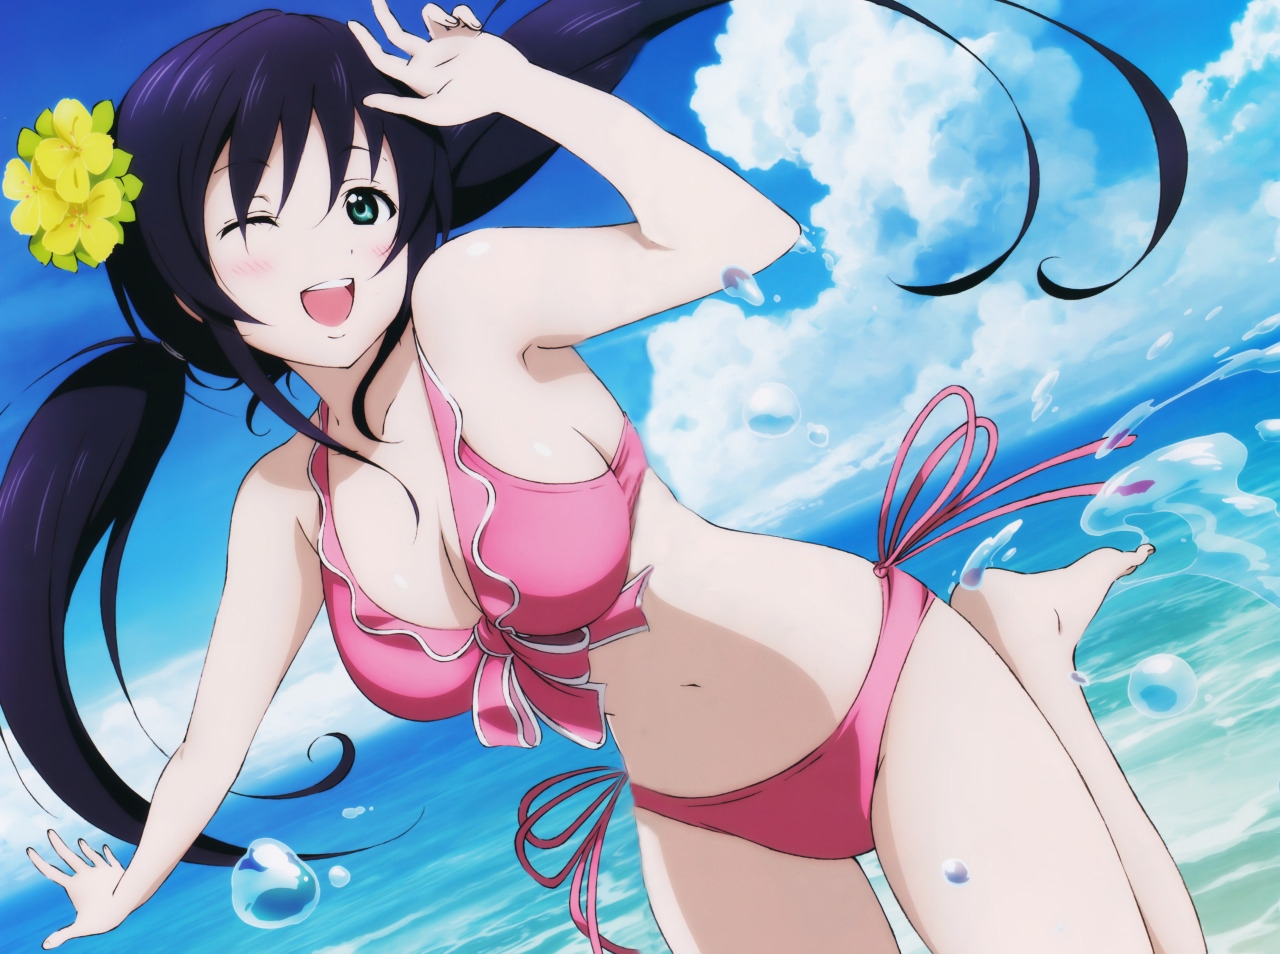 Swimsuit Nozomi, Nozomi Toujou In Swimsuit - Love Live Nozomi Bikini , HD Wallpaper & Backgrounds